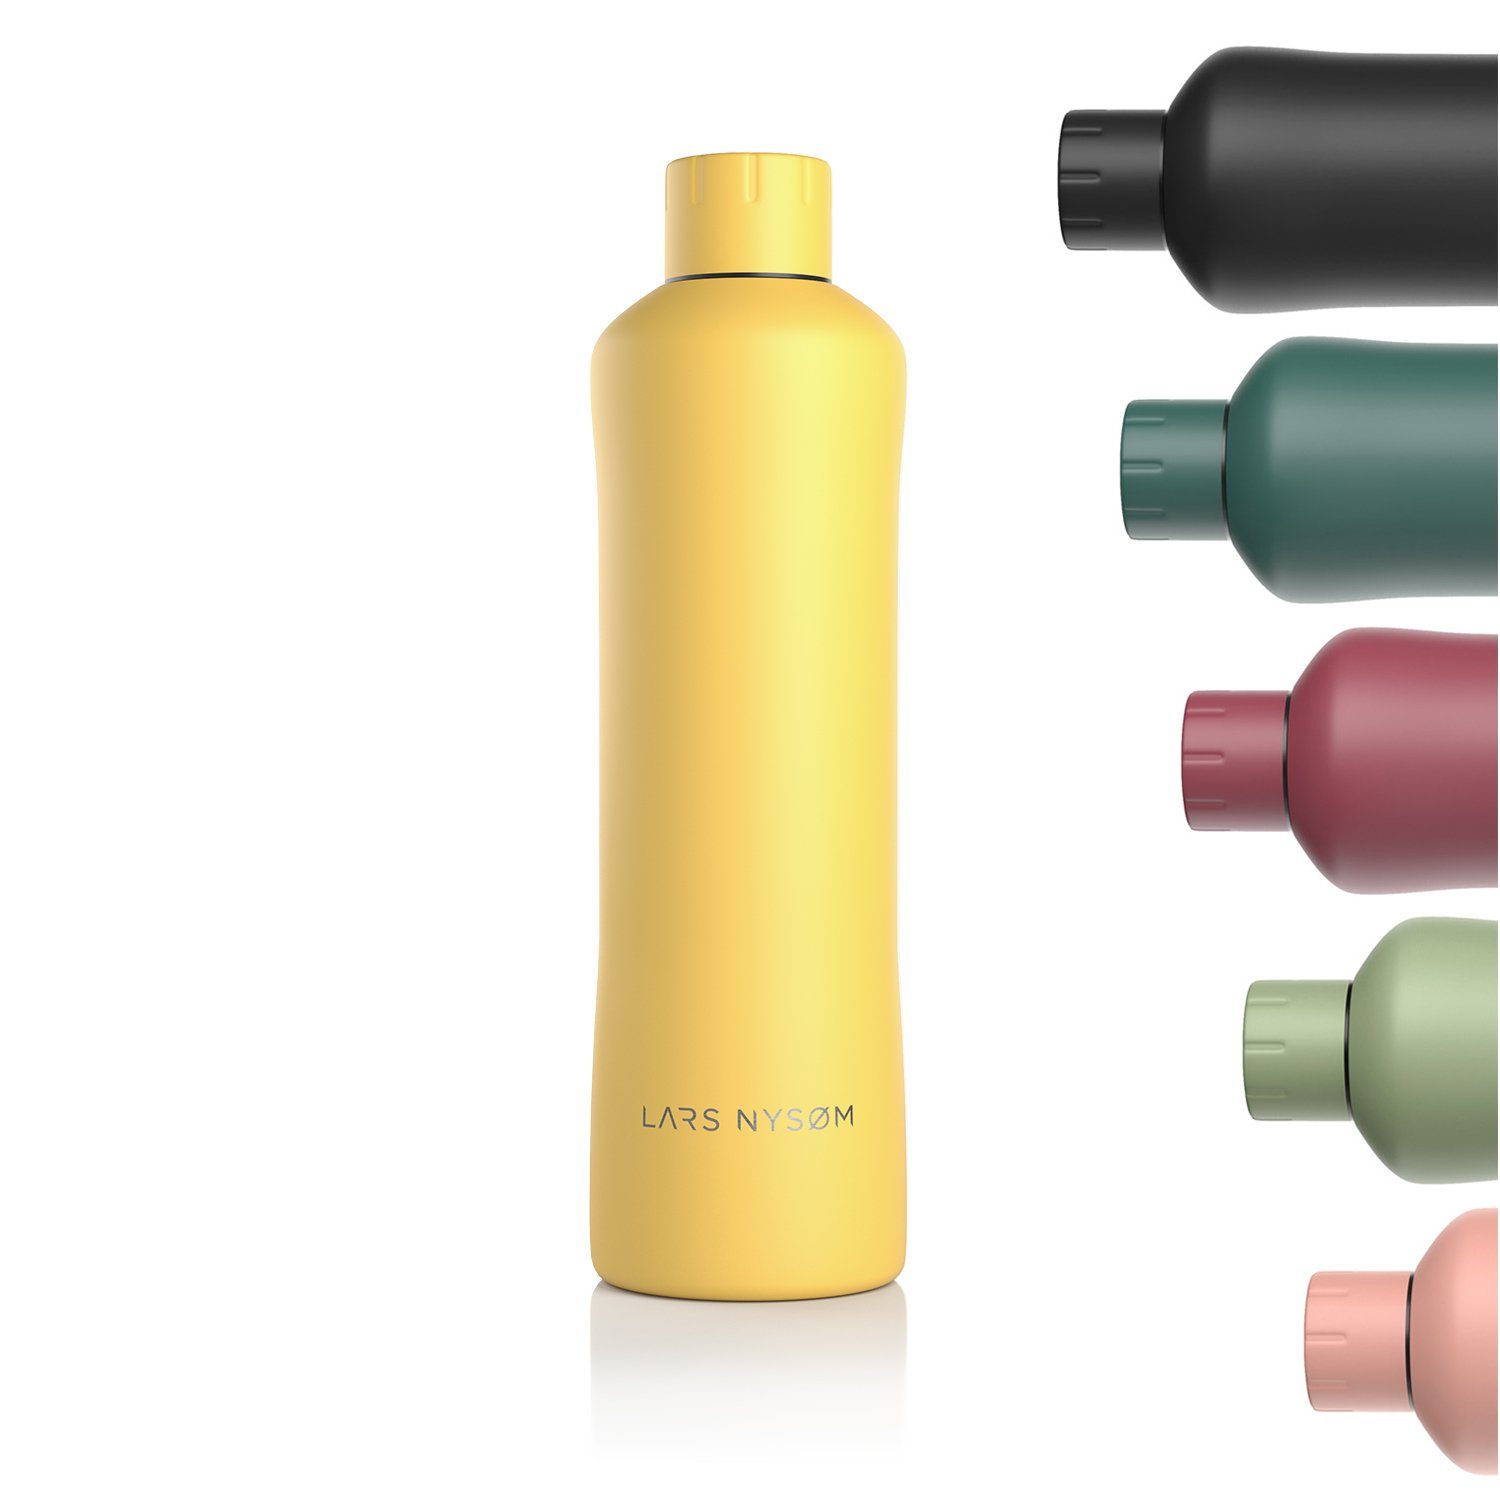 Bølge, LARS Thermosflasche Mustard Isolierflasche Kohlensäure BPA-Freie Spicy geeignet NYSØM